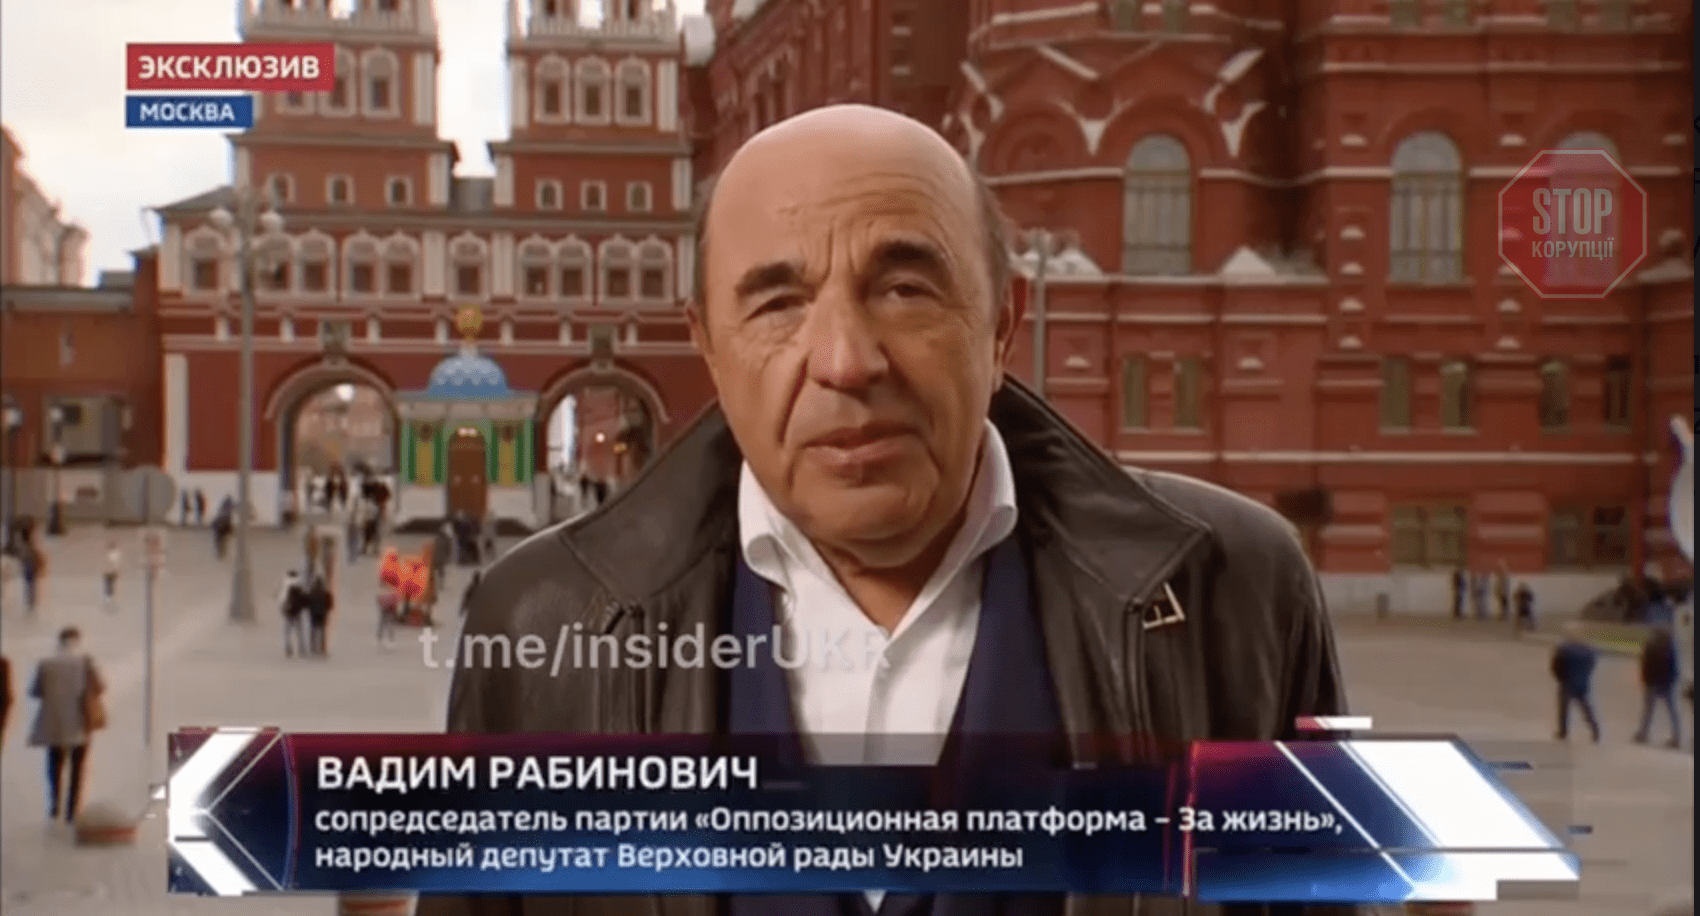  Вадим Рабинович назвал Россию вечным другом и партнером Украины